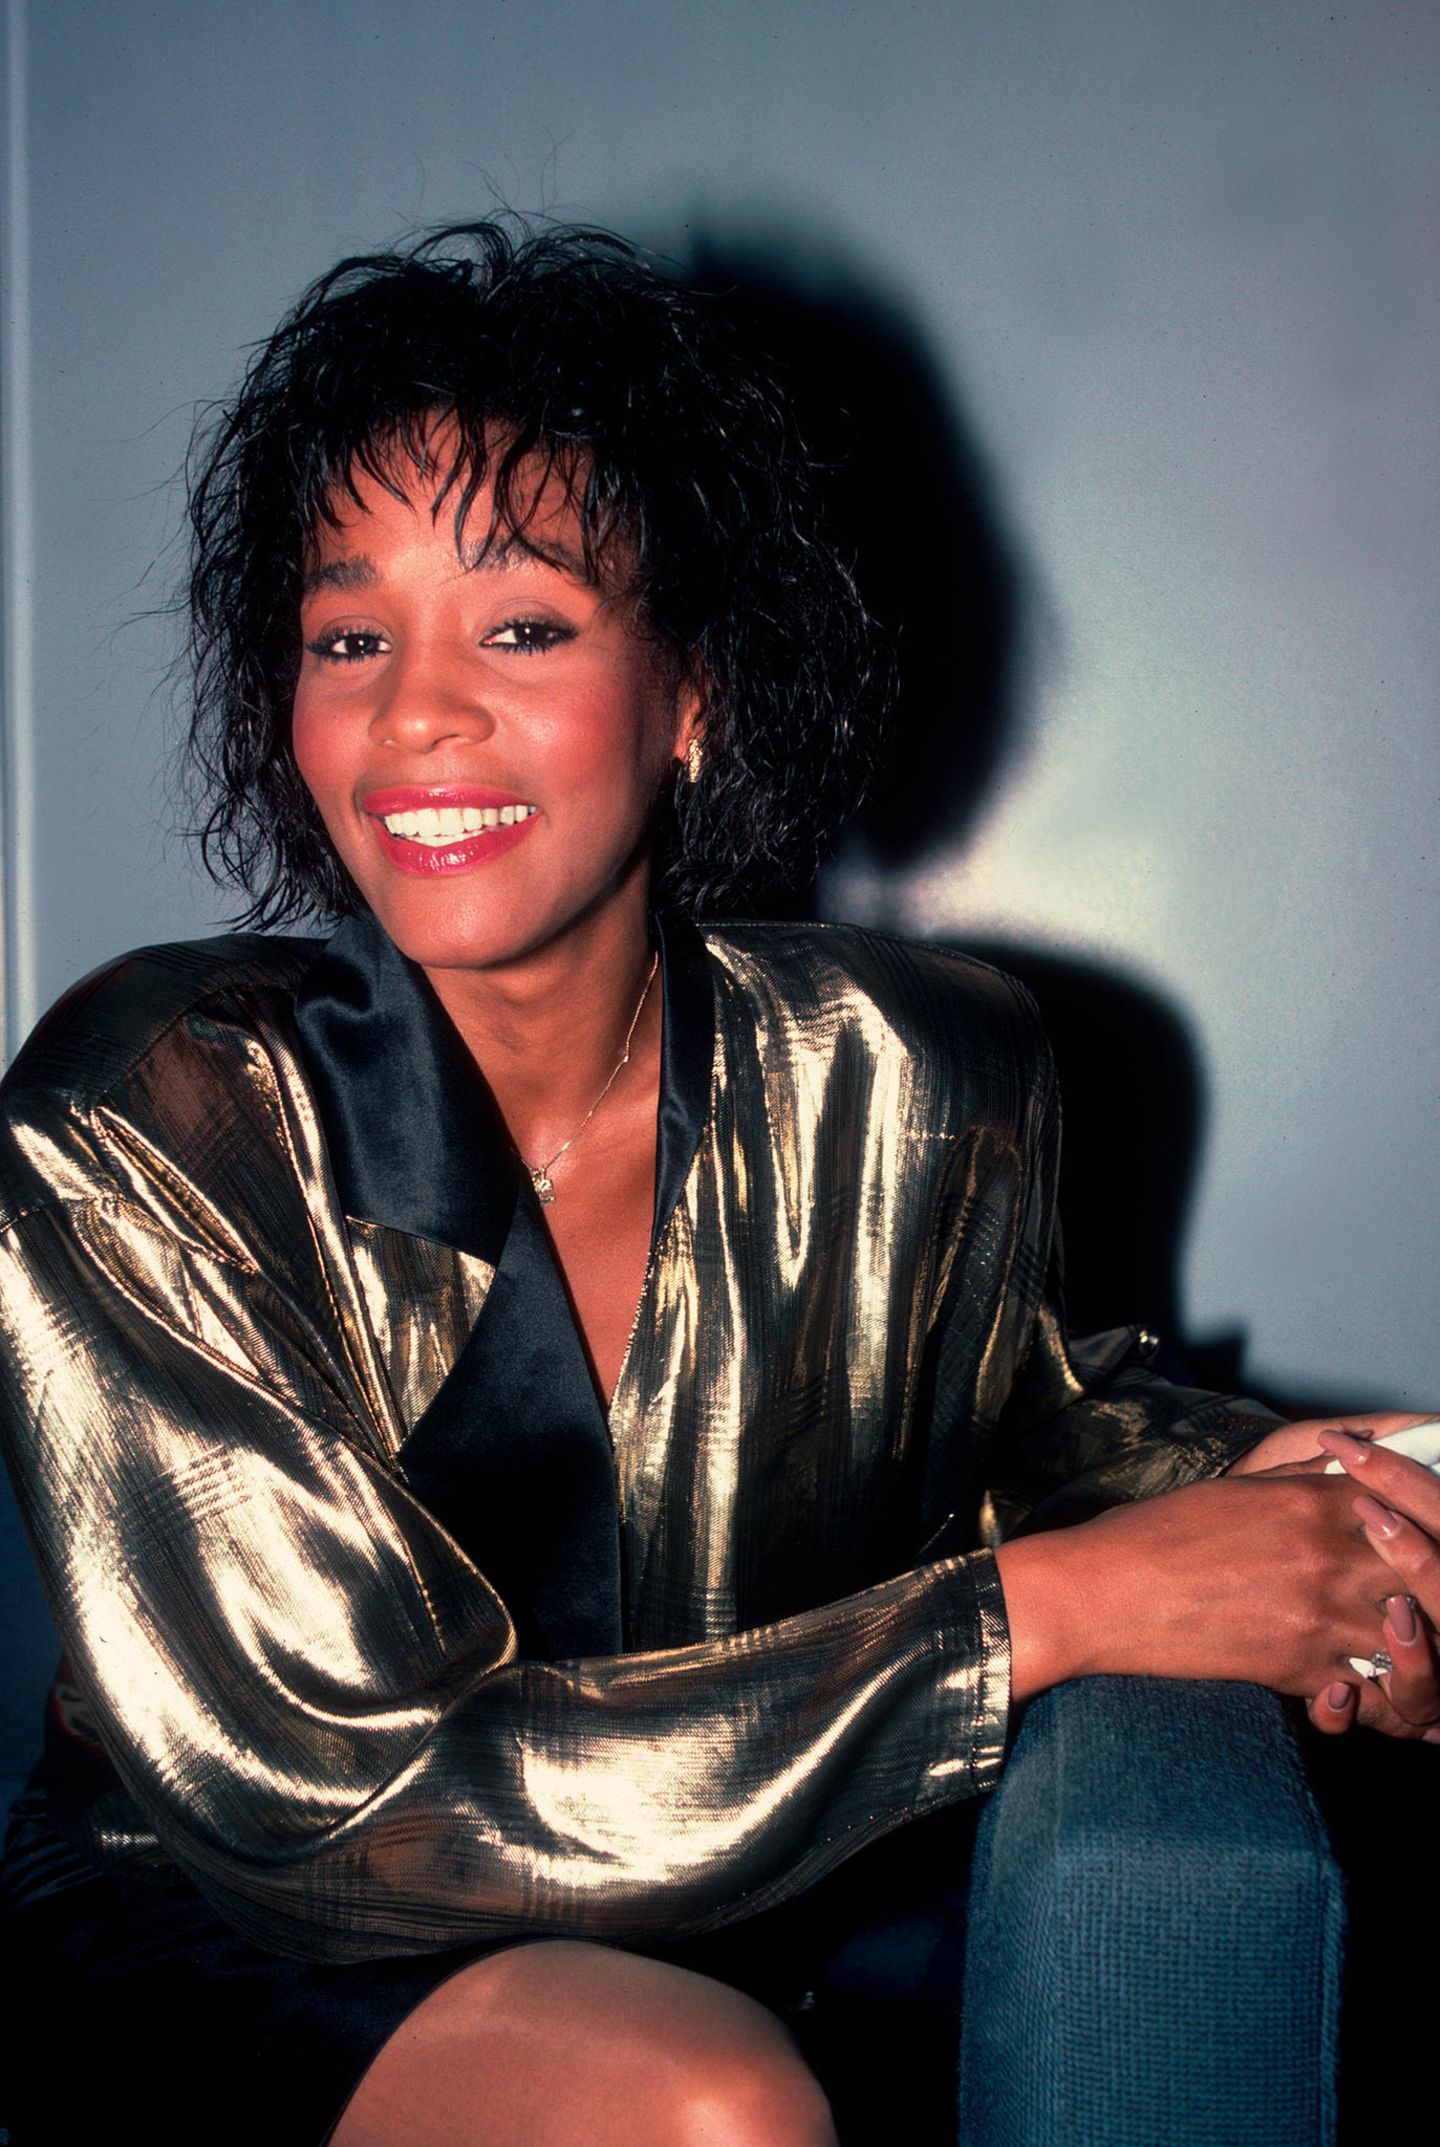 80er Frisuren: Whitney Houston